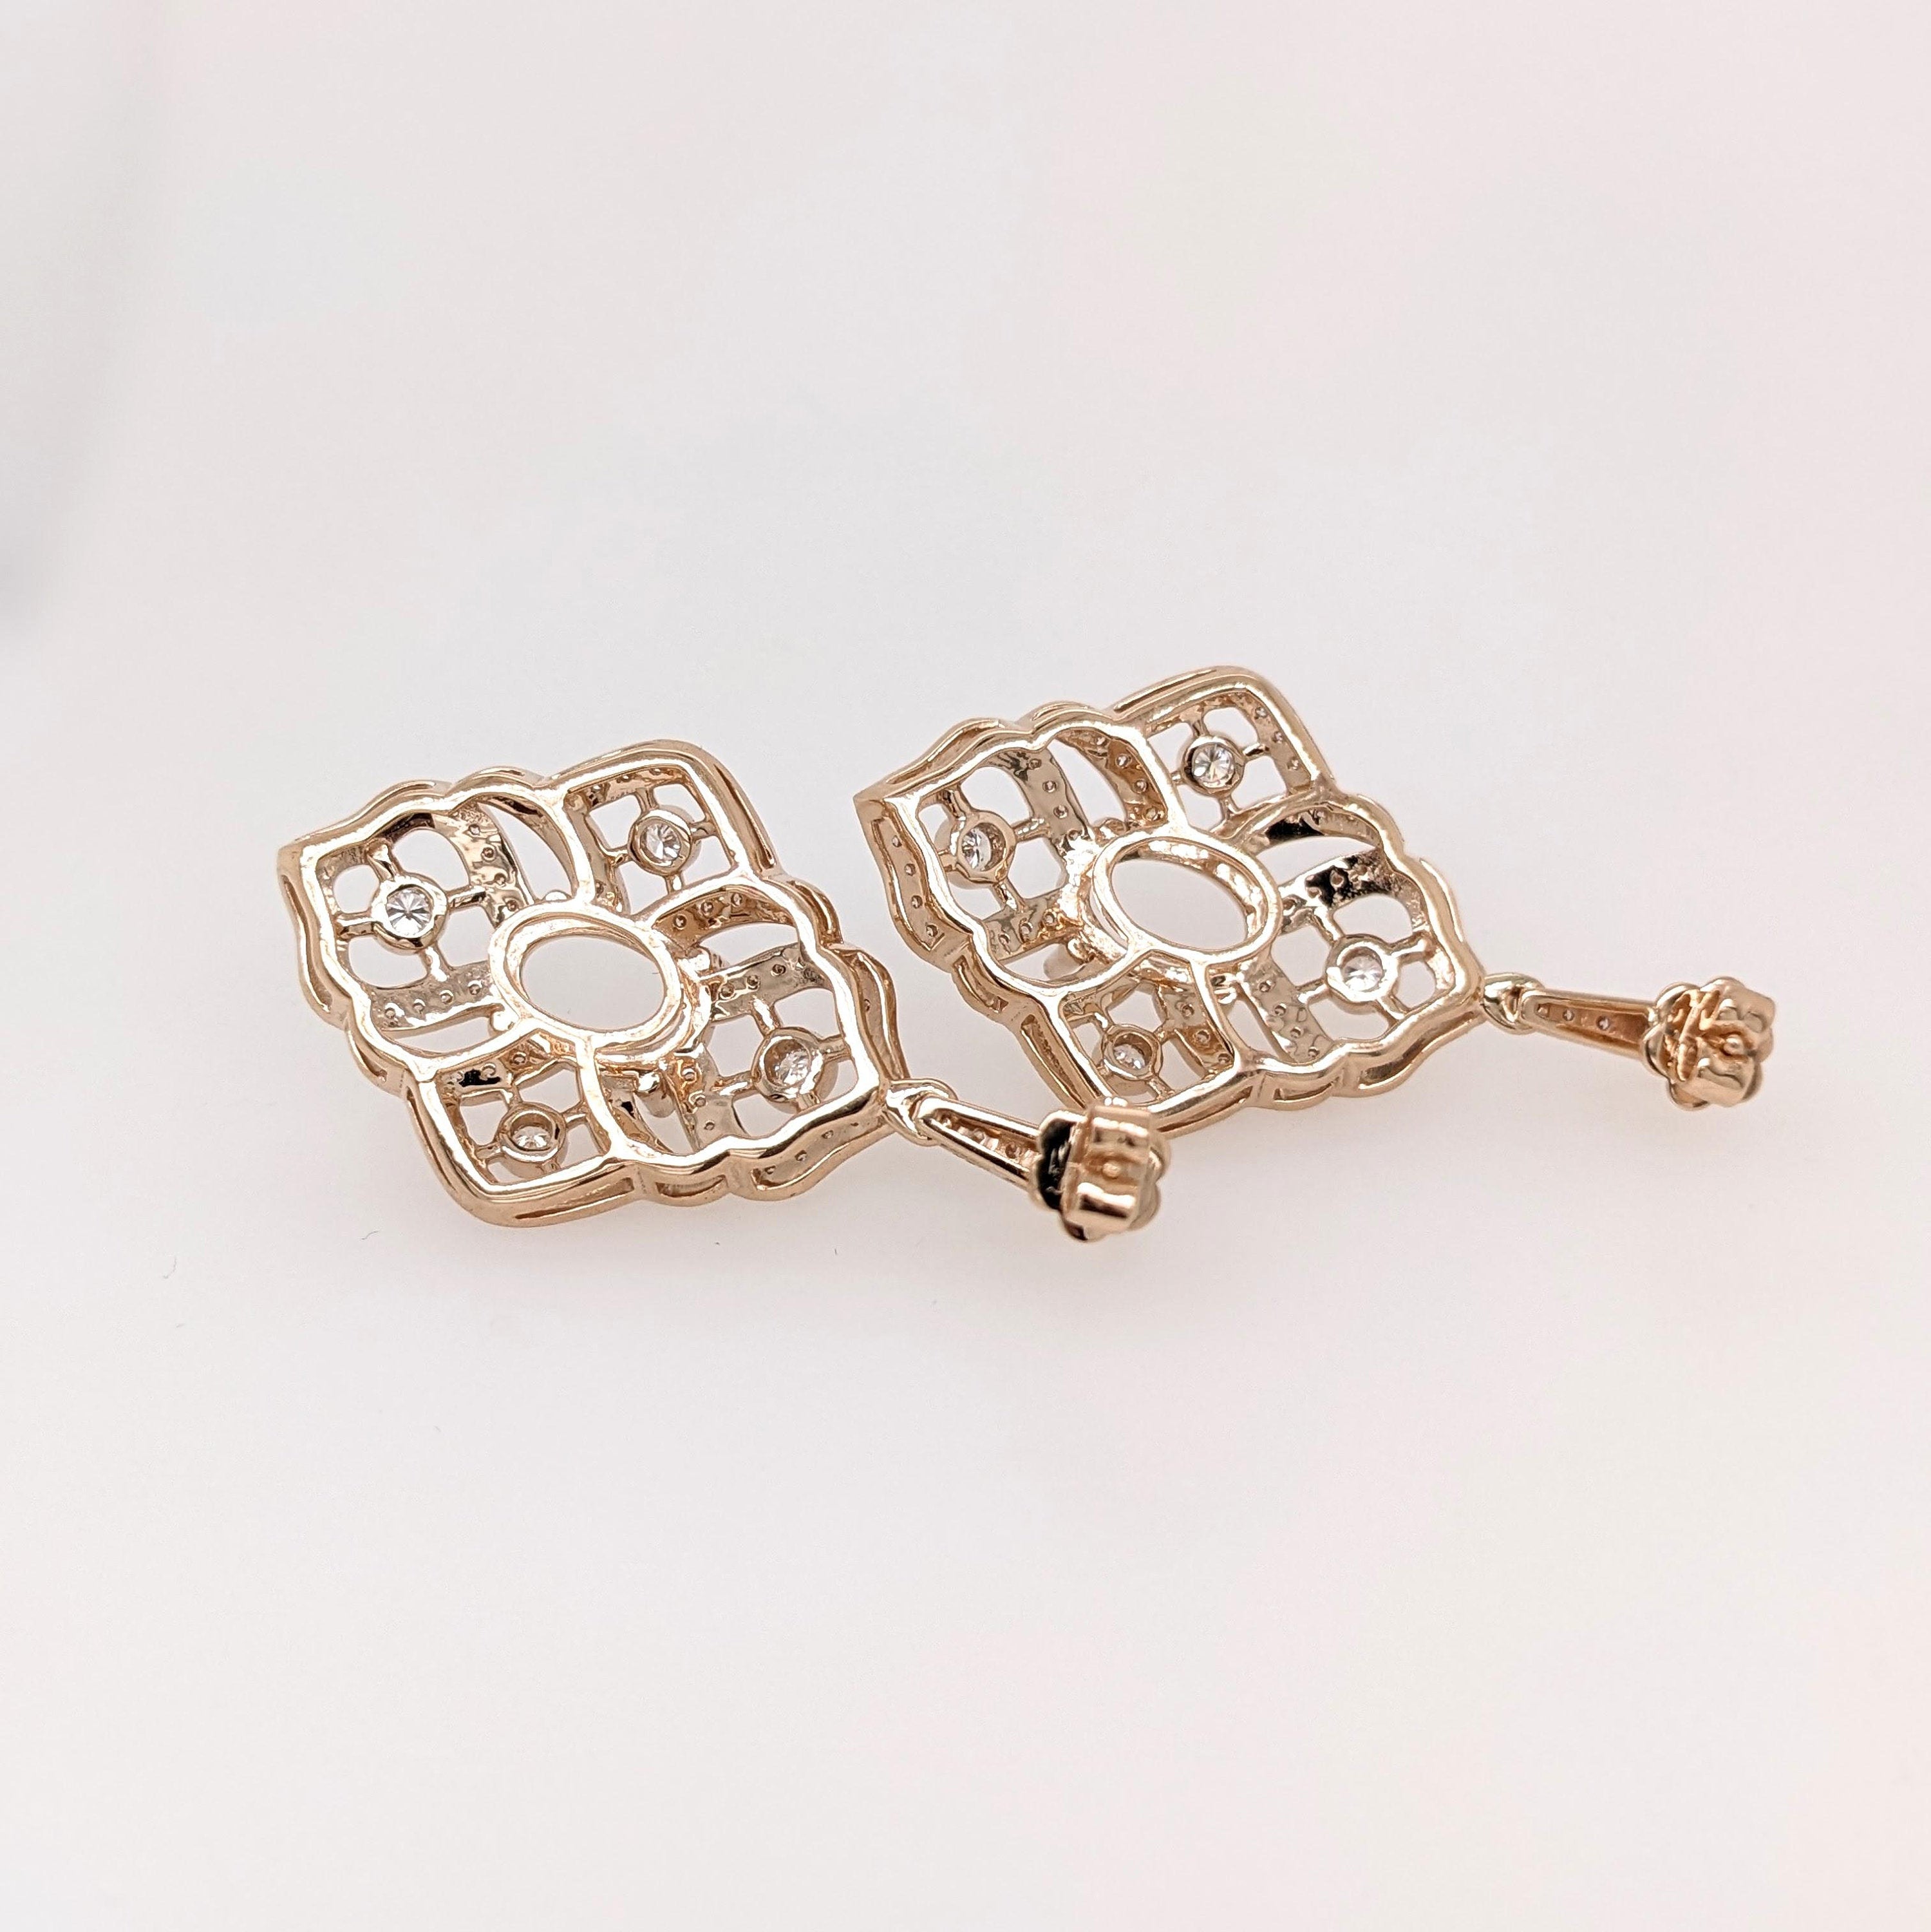 Earrings-Statement Dangle Earrings Semi Mount w Diamonds in Solid 14K Gold Oval 10x7mm - NNJGemstones